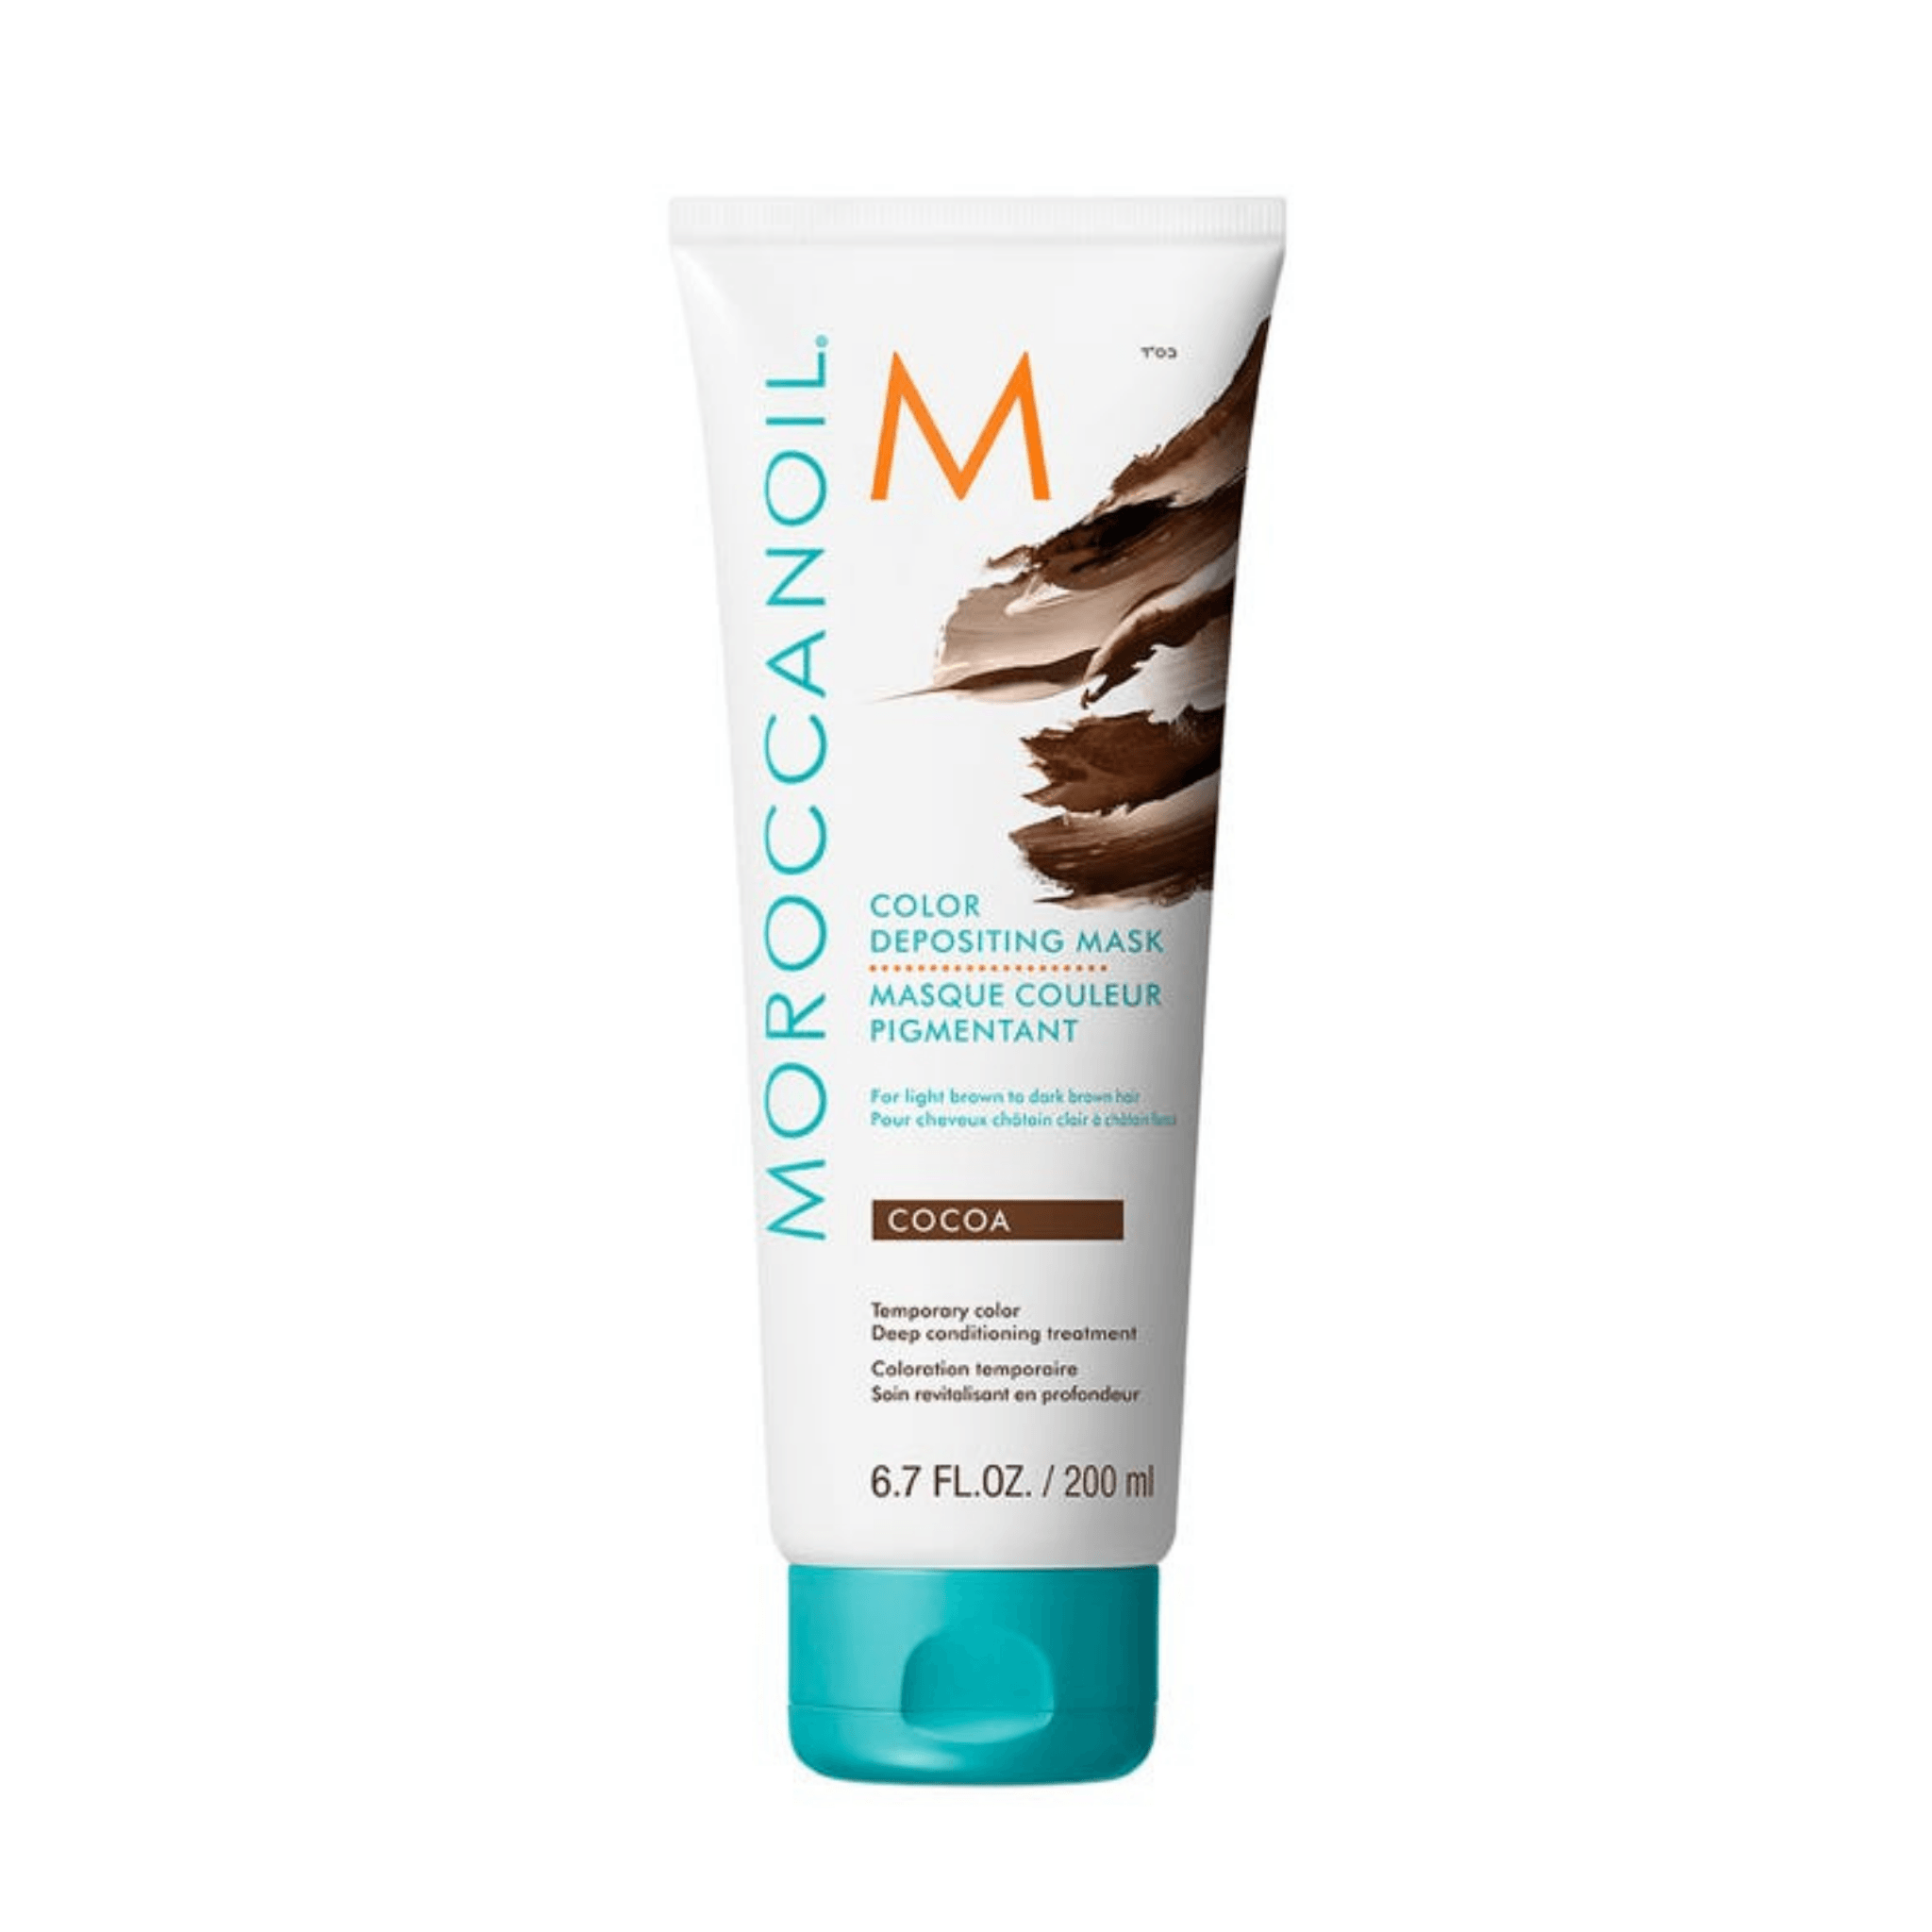 Moroccanoil. Masque Couleur Pigmentant Cacao - 200 ml - Concept C. Shop